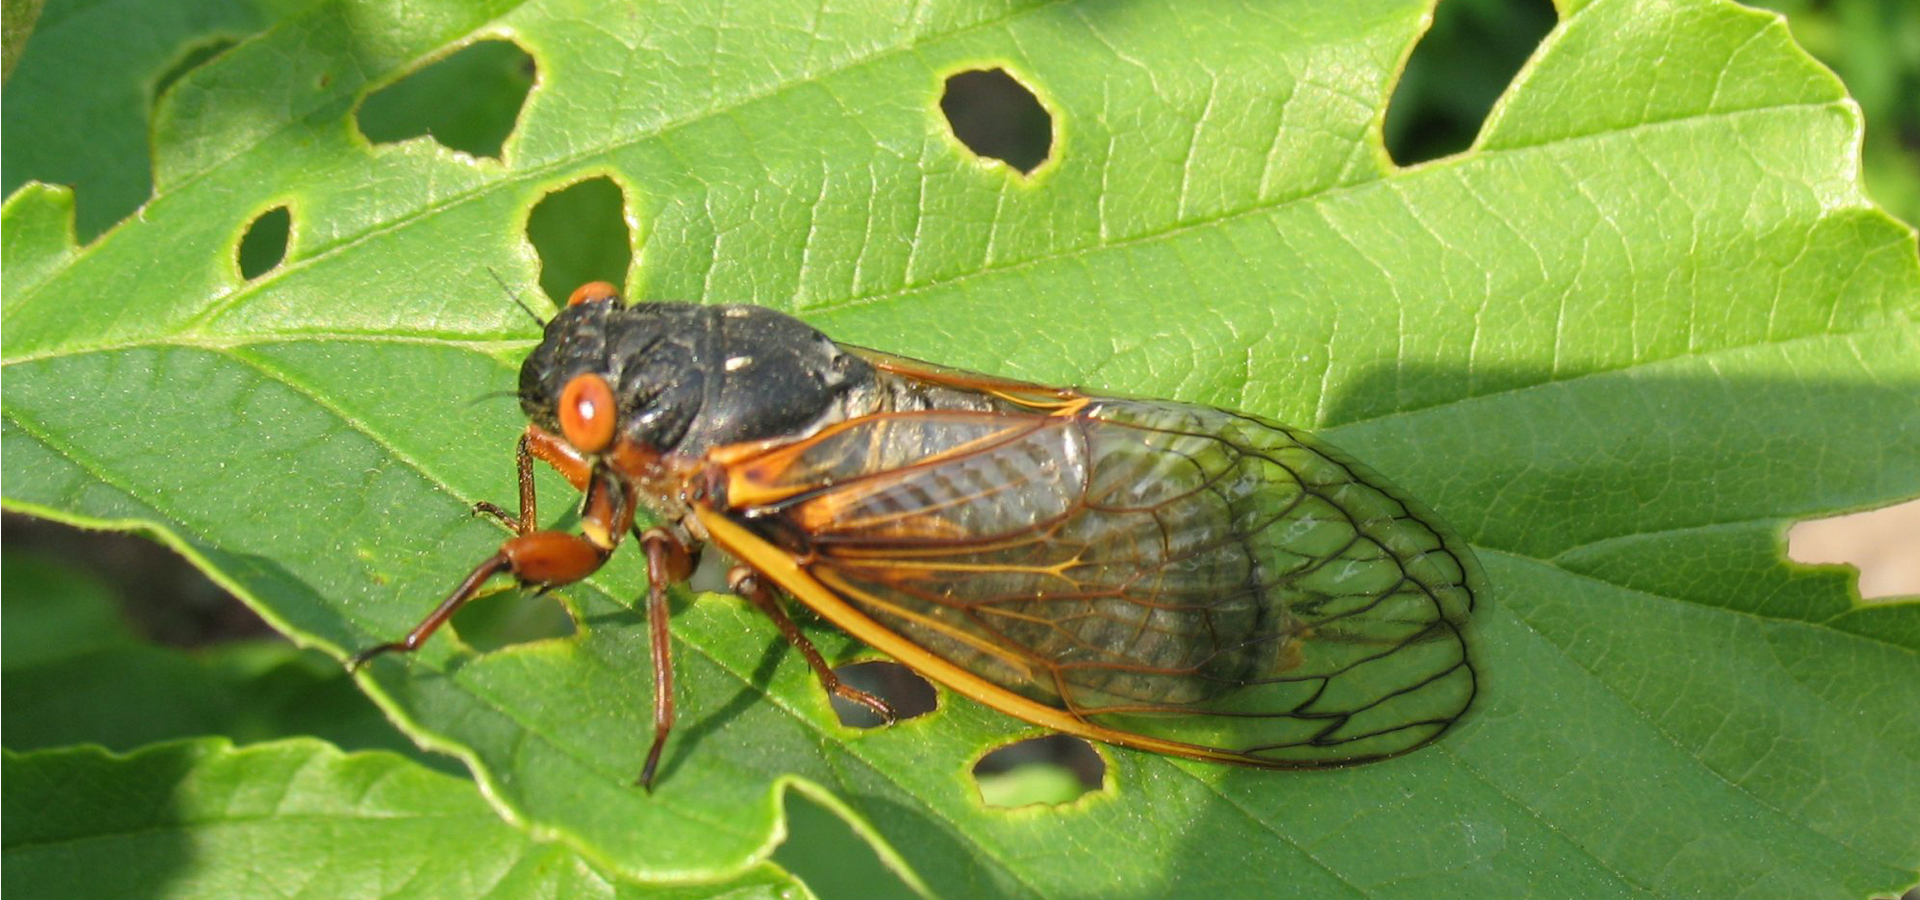 Sound Sensitivity, Autism, and the Coming Cicadas